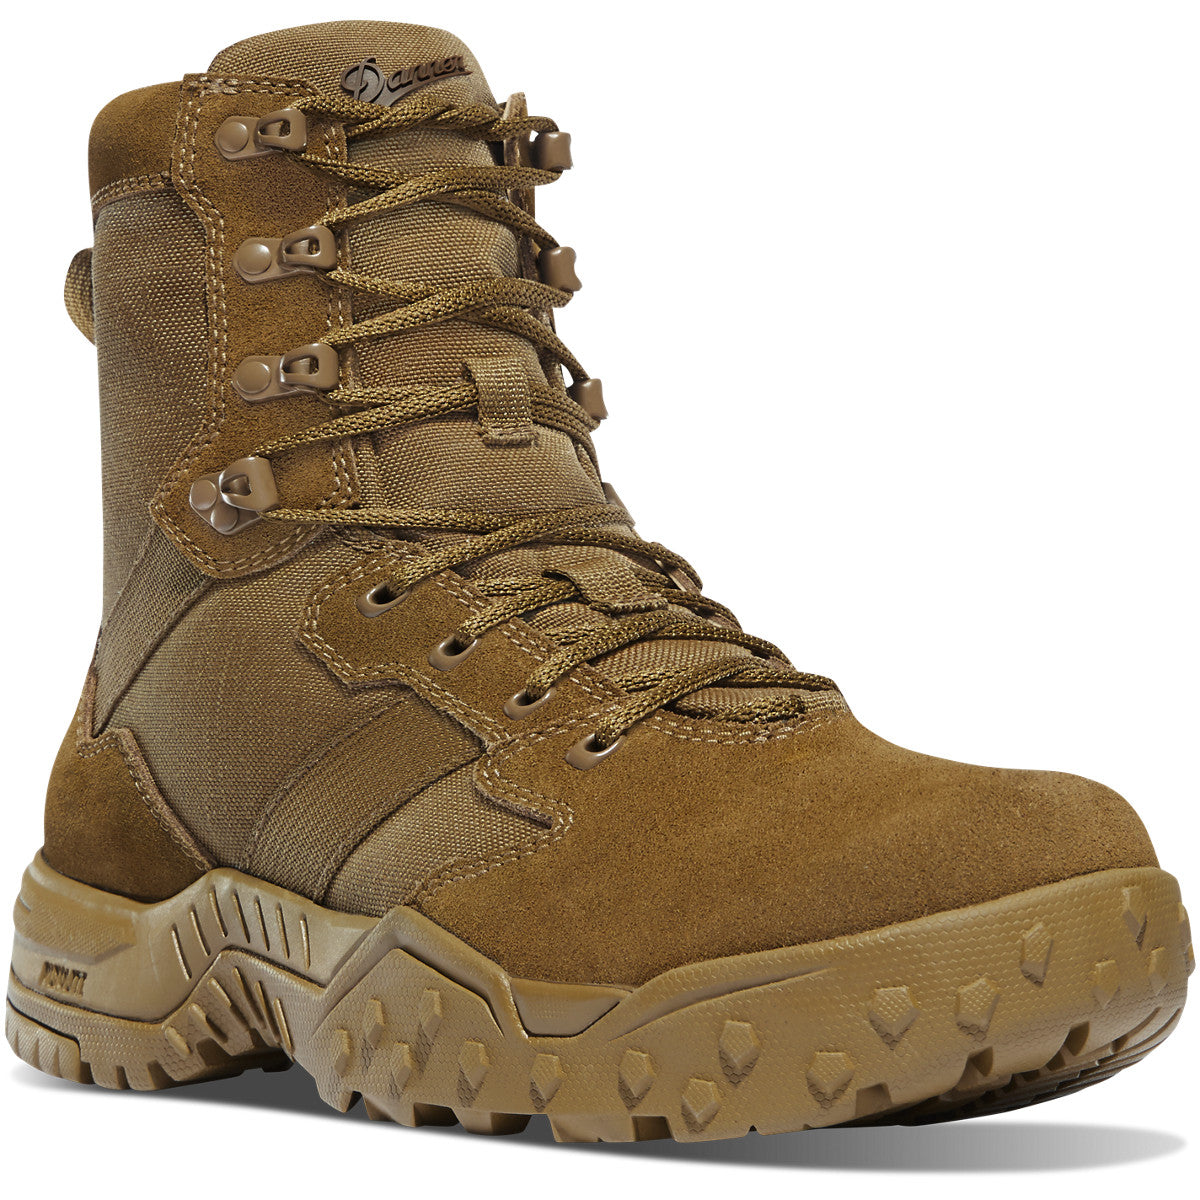 Danner Men's Scorch Military 8" Duty Boot - Coyote - 53661 8 / Medium / Coyote - Overlook Boots